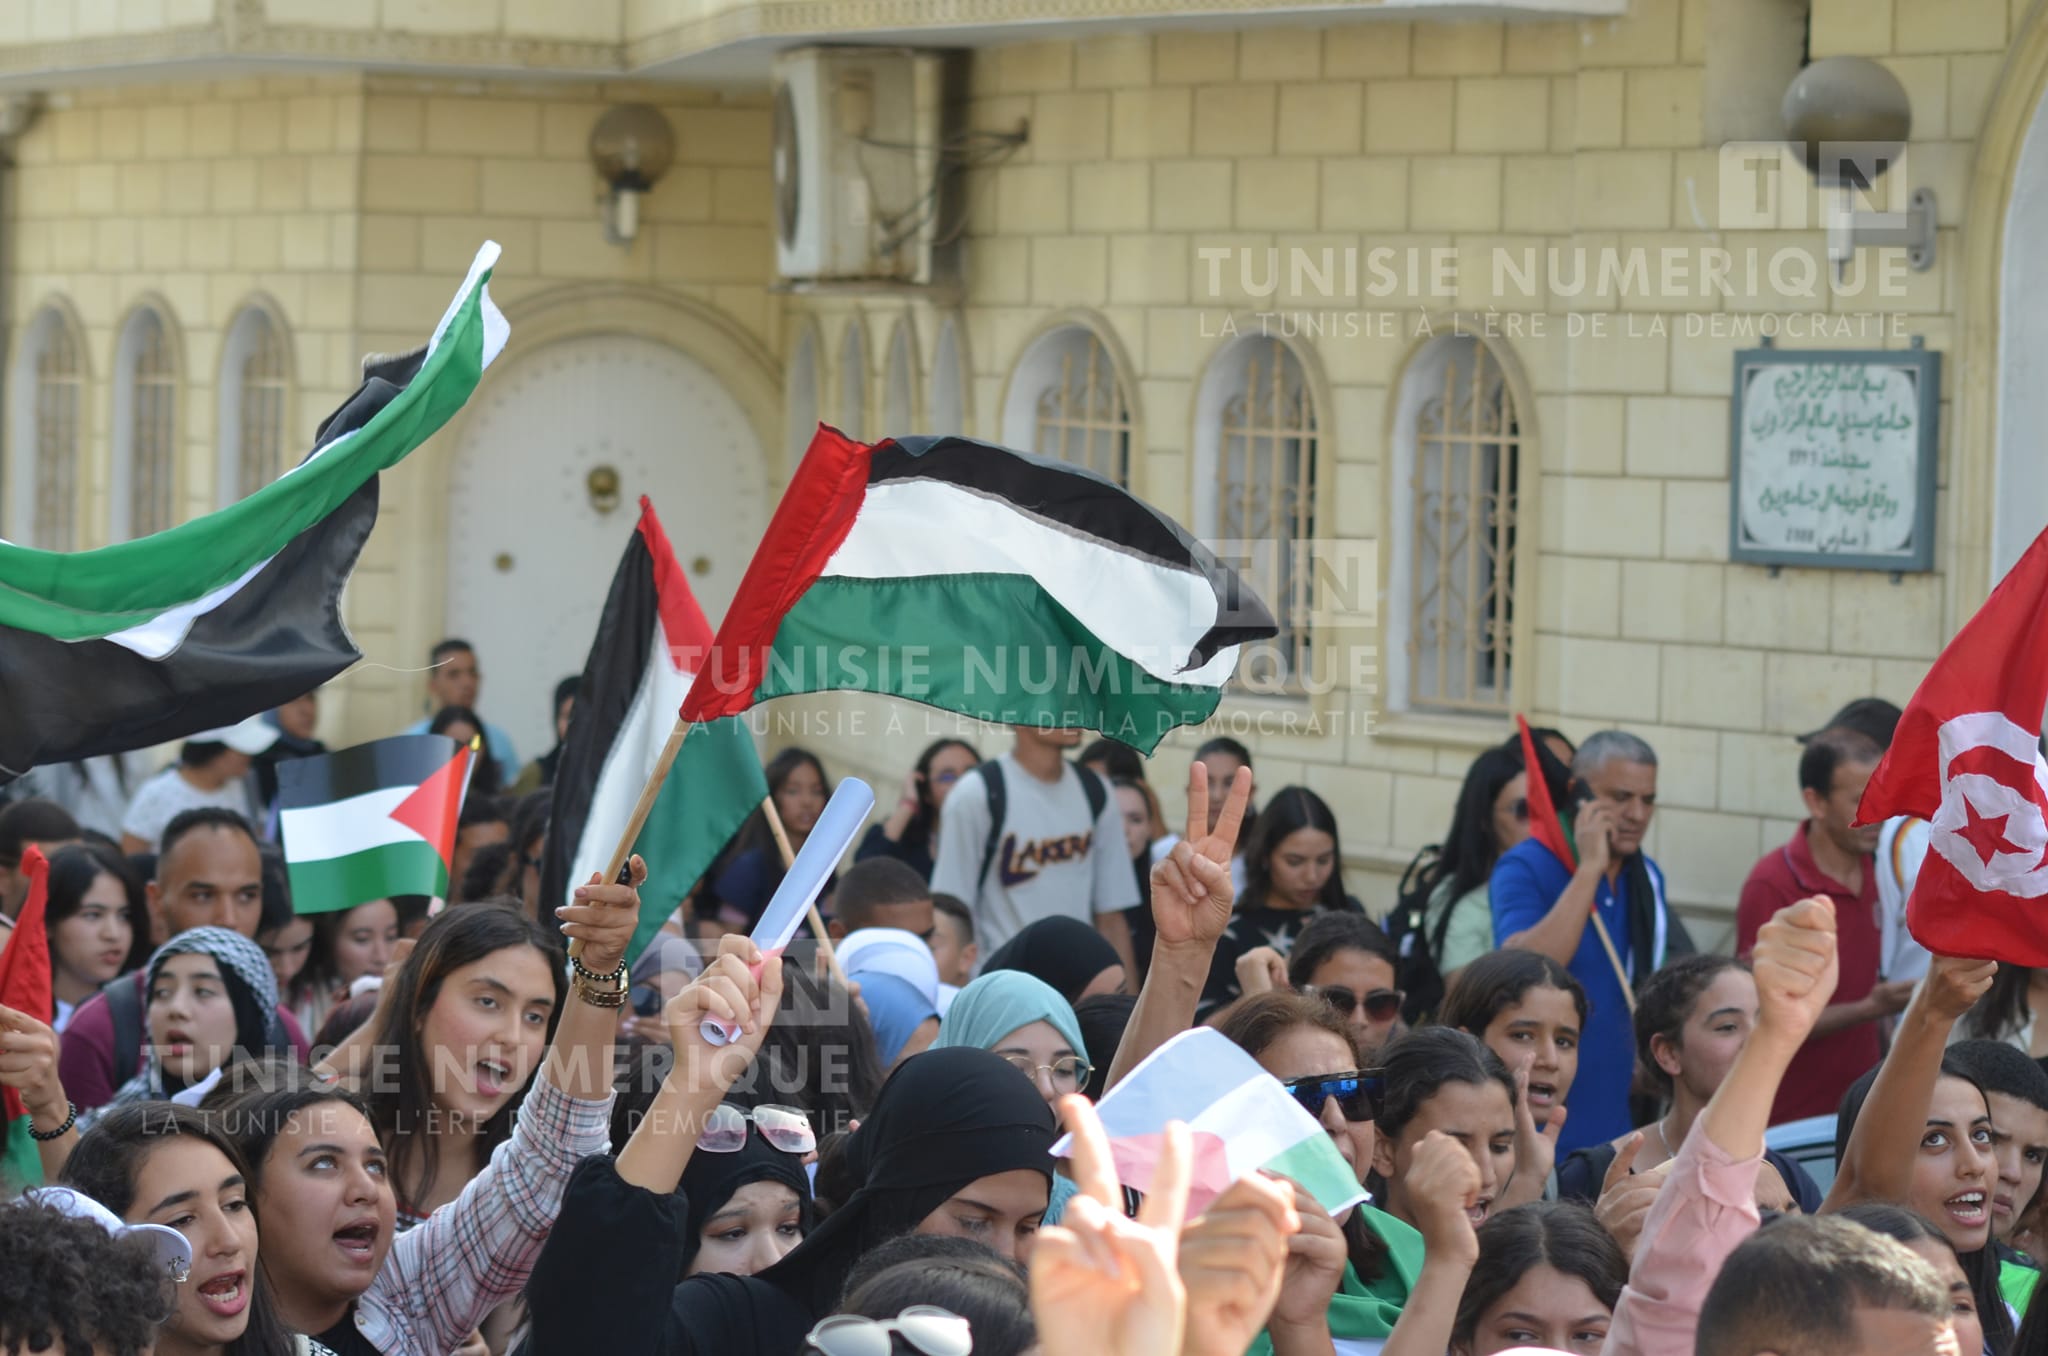 Les tunisiens affichent un soutien massif à la Palestine à travers un boycott contre des enseignes et des marques